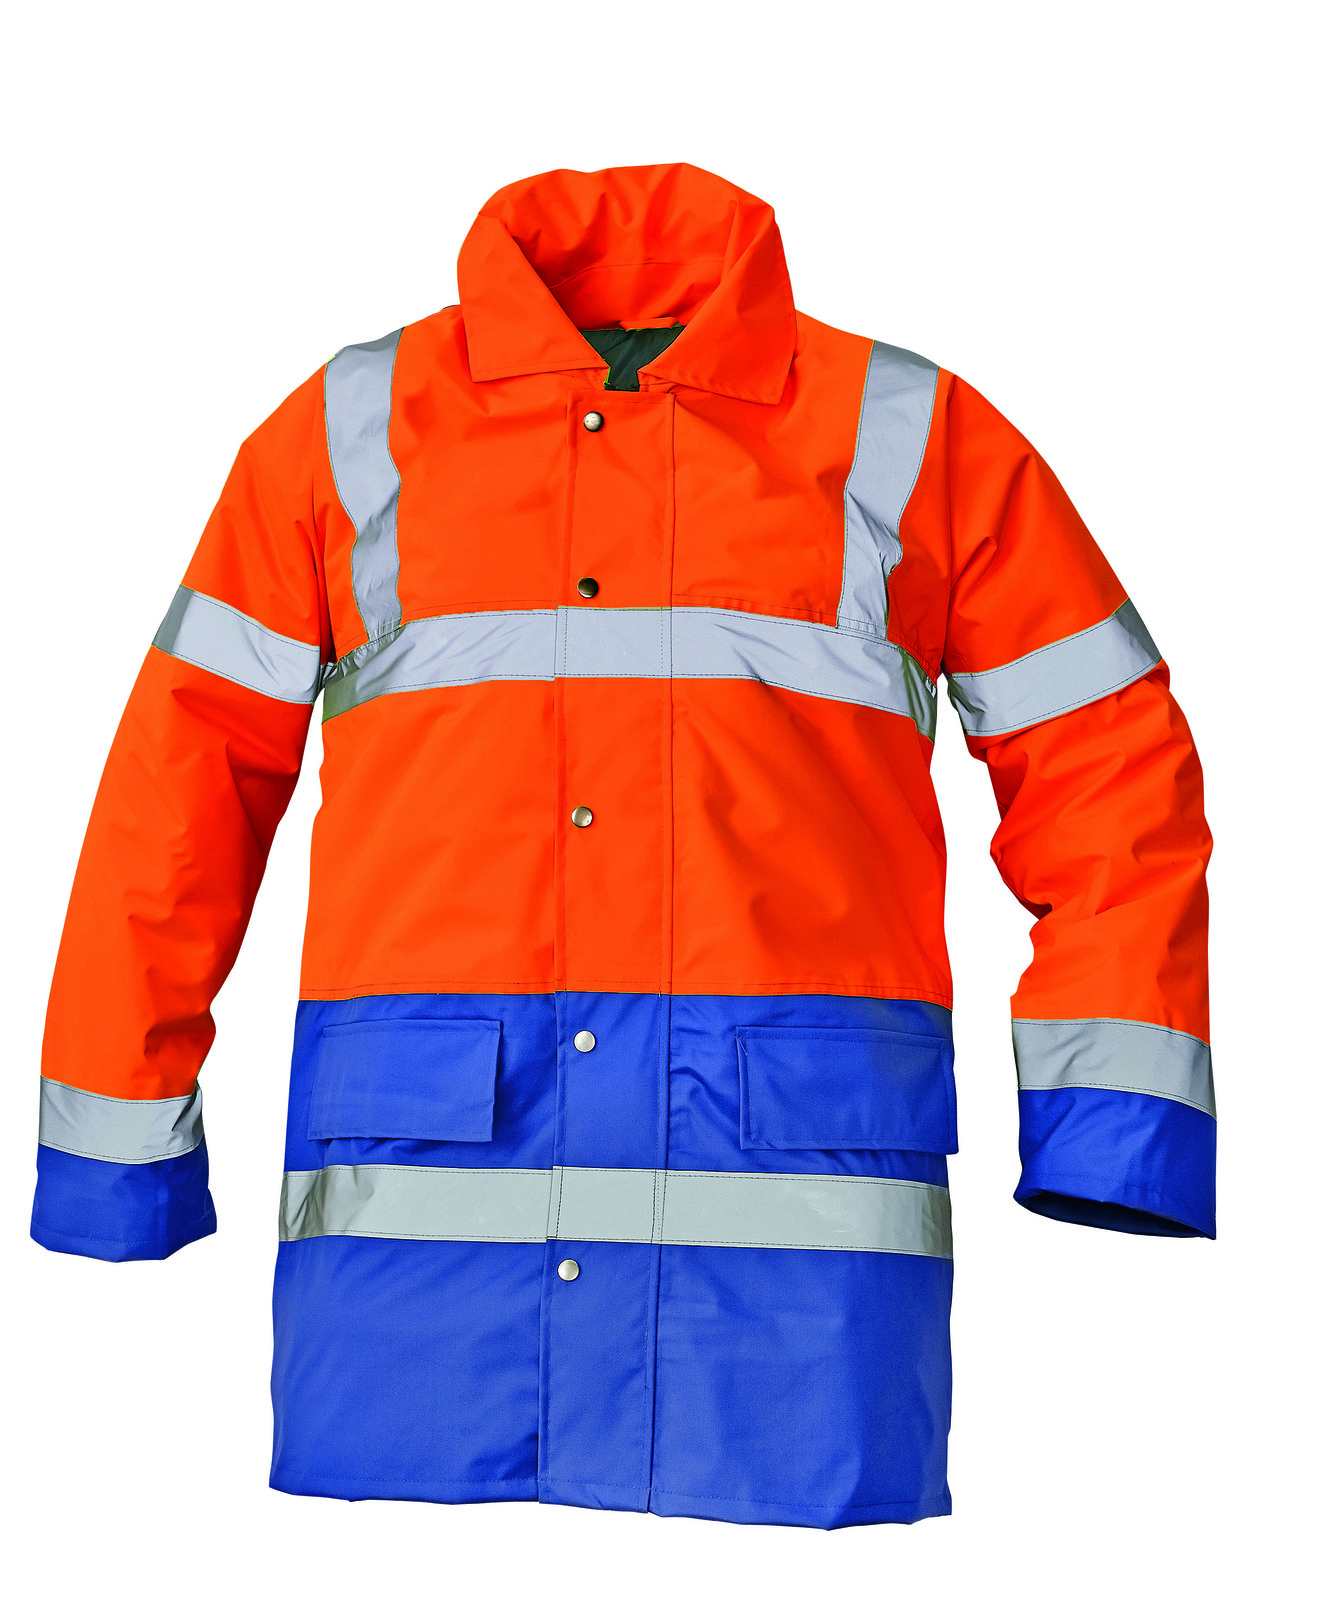 Ľahká zateplená reflexná bunda Sefton - veľkosť: S, farba: oranž/royal